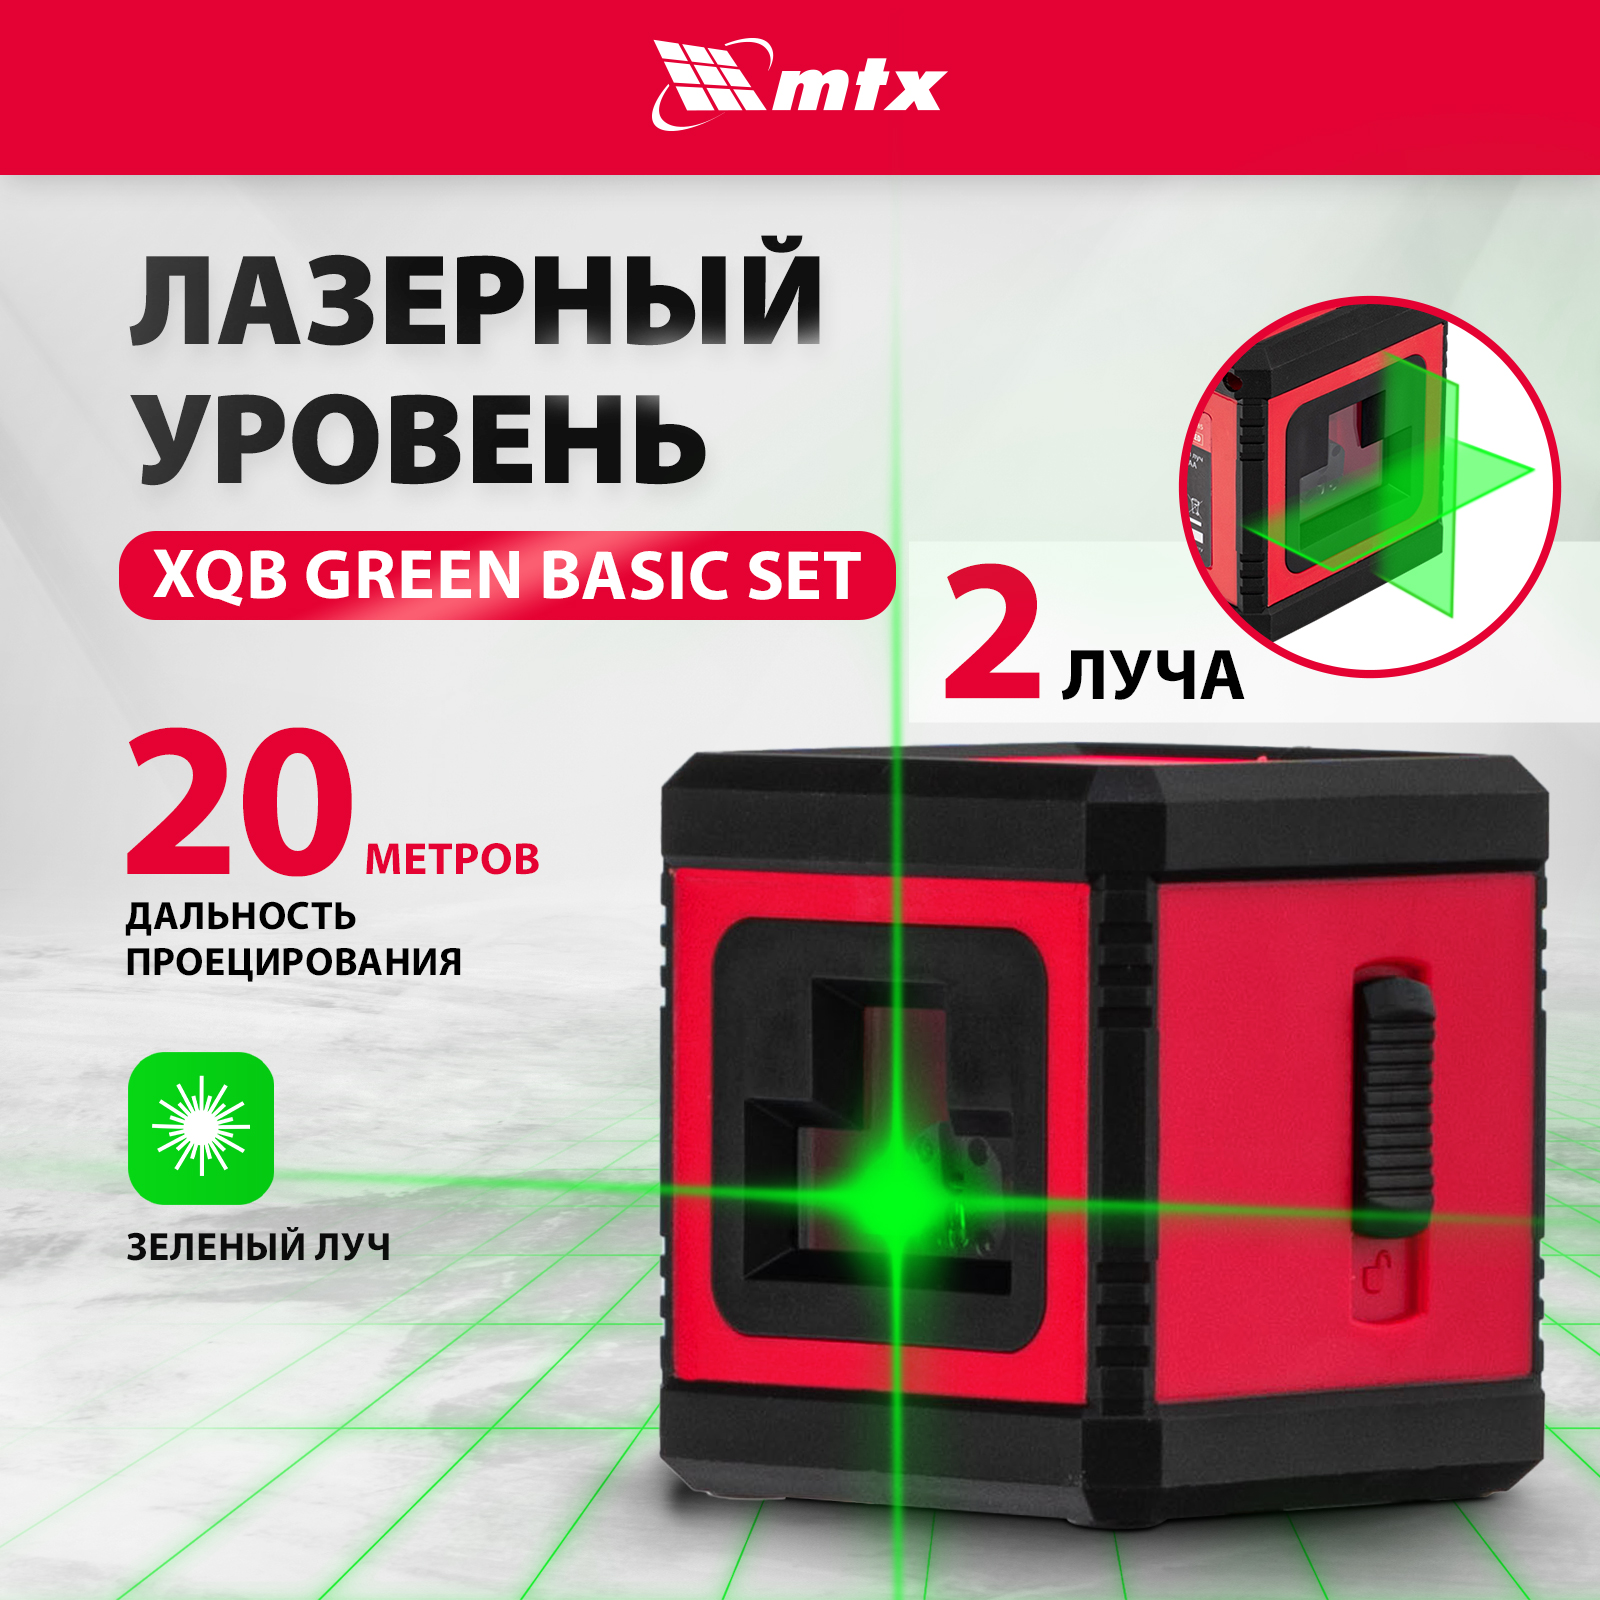 фото Лазерный уровень mtx xqb green basic set, 20 м, зеленый луч, батарейки, резьба 1/4" 35019